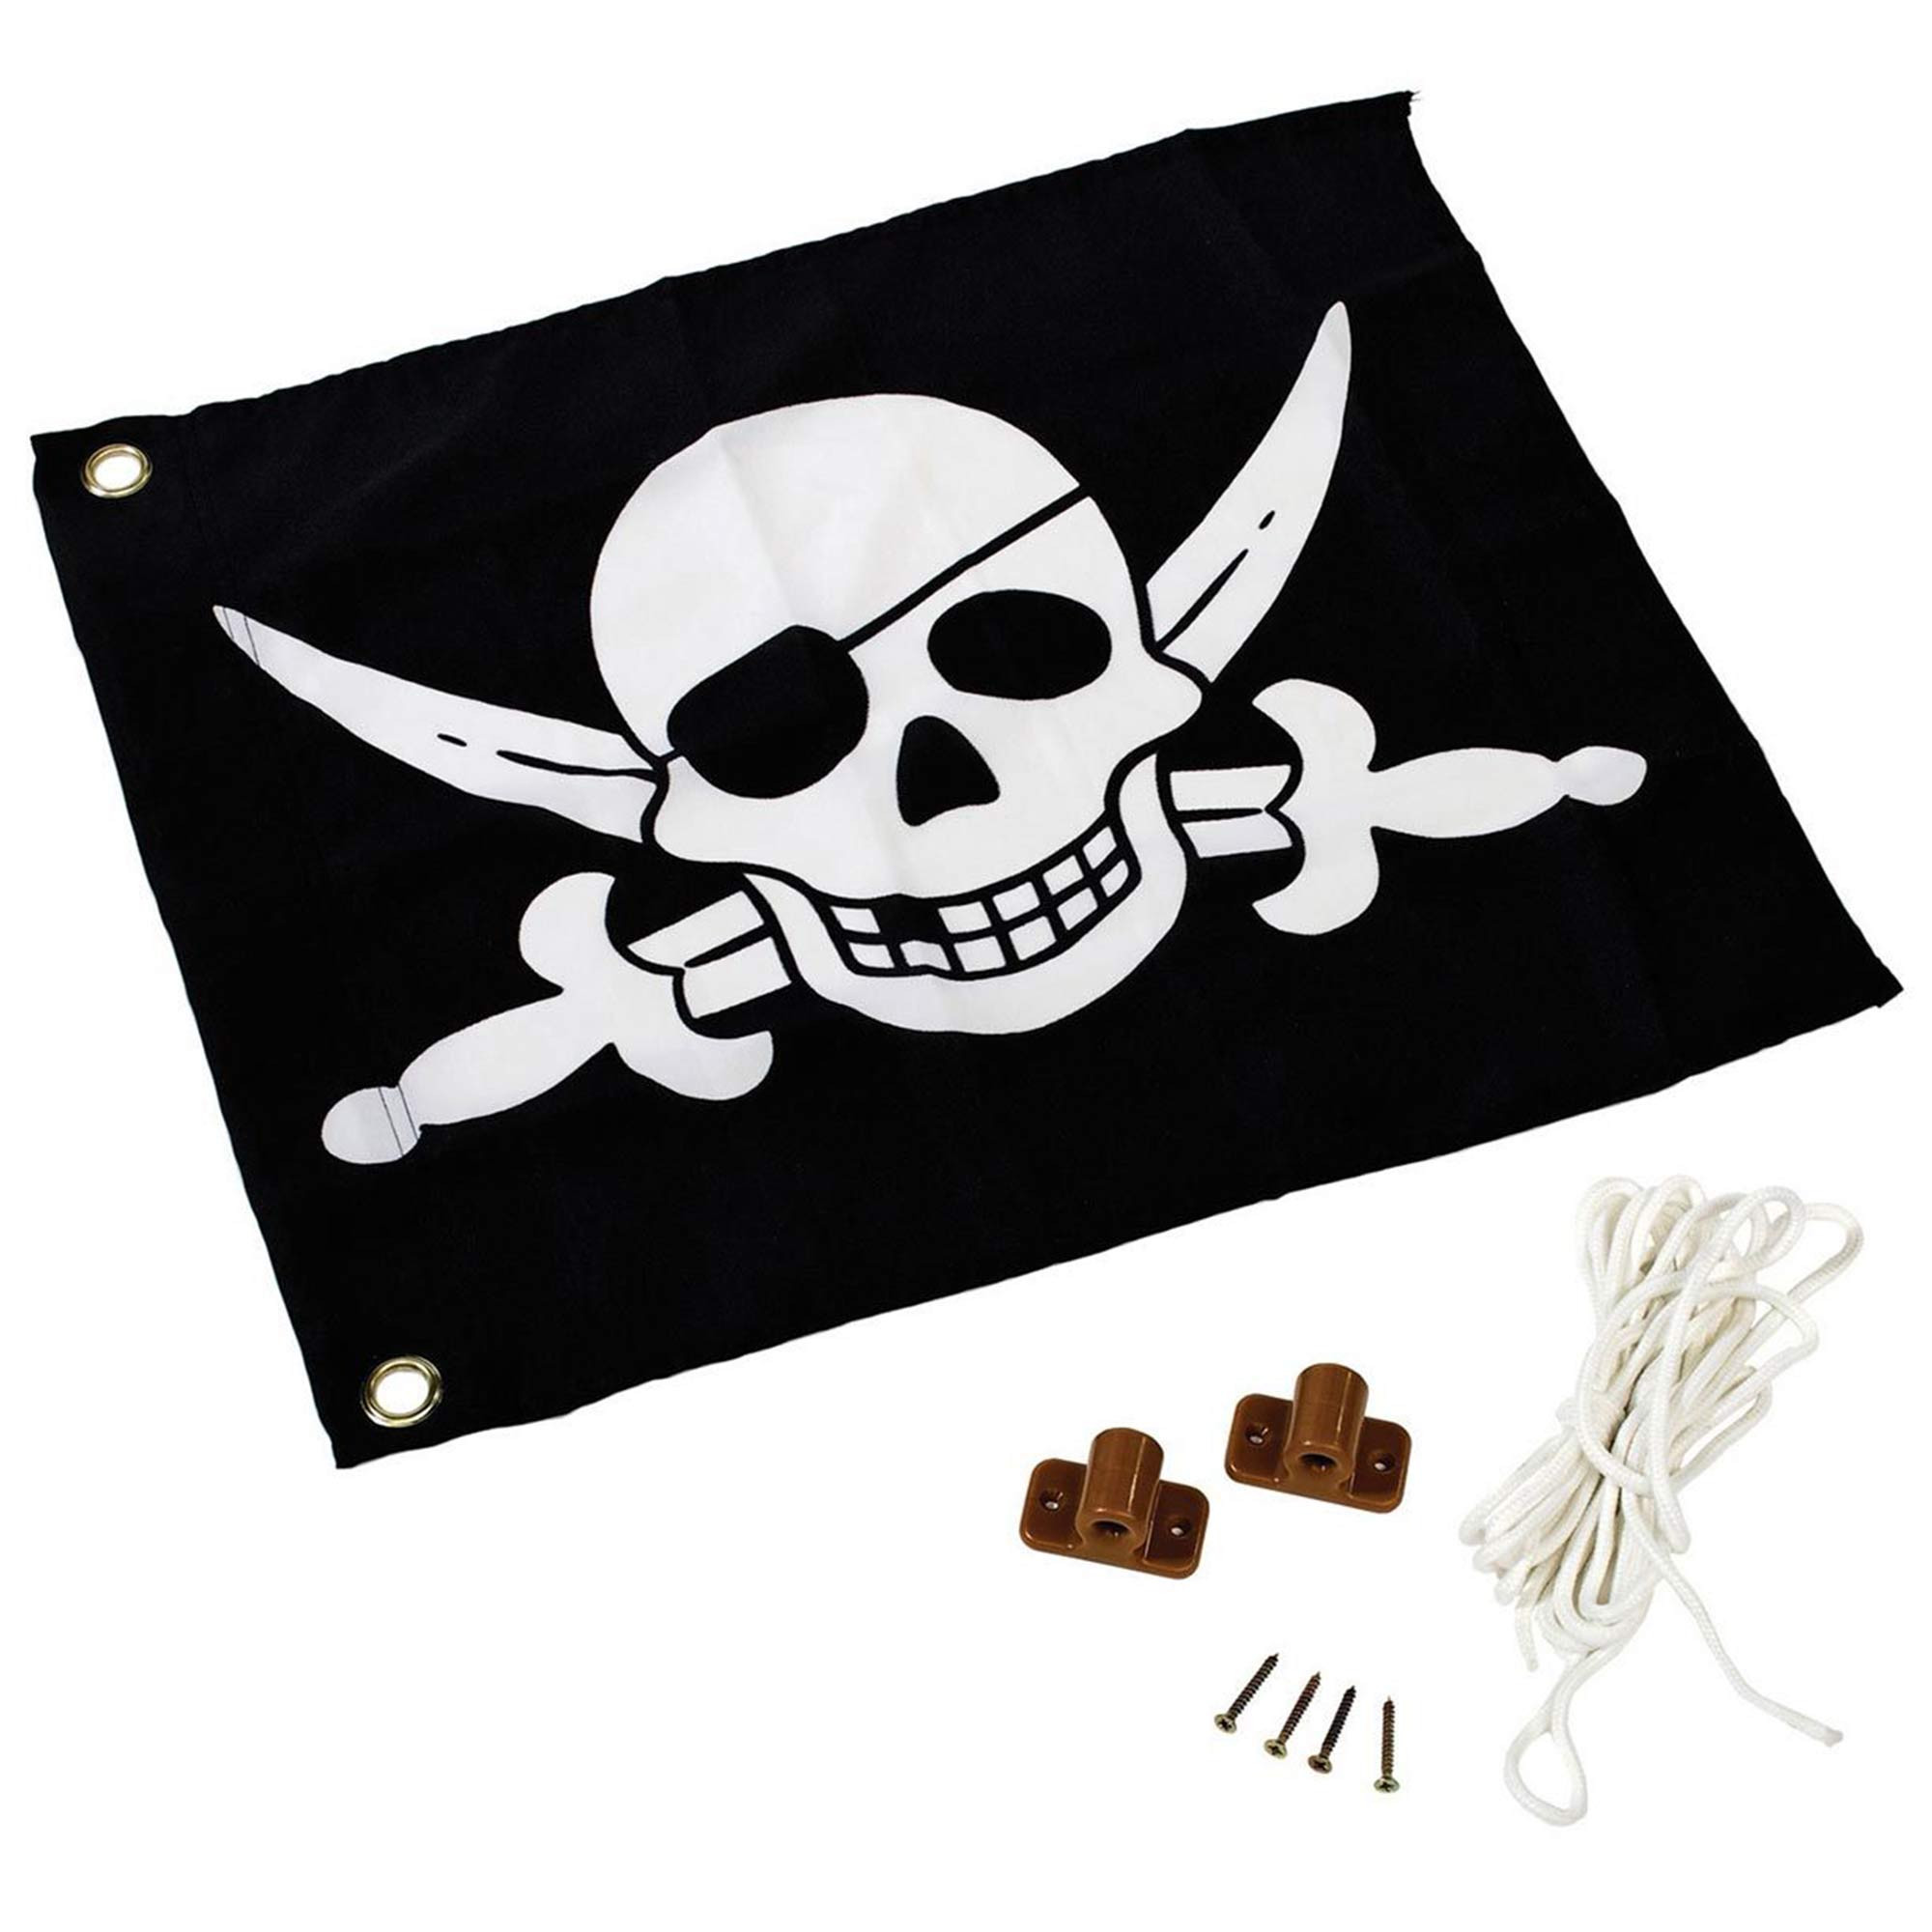 Bandera pirata con sistema de izado para torre de juegos - 550 x